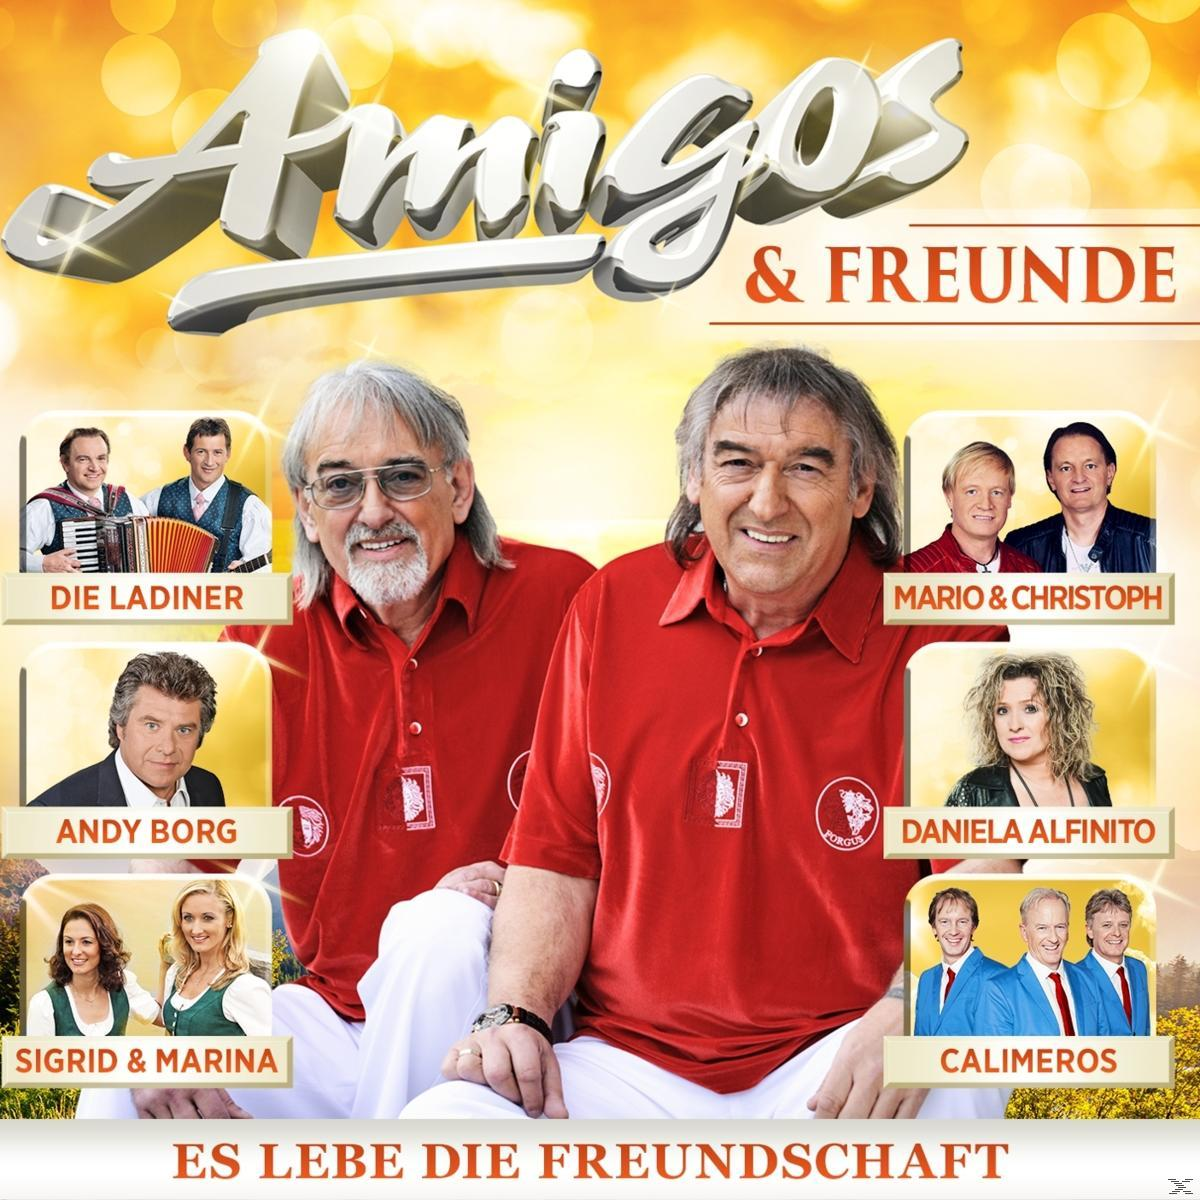 VARIOUS, Die Amigos - Freunde & Amigos (CD) 